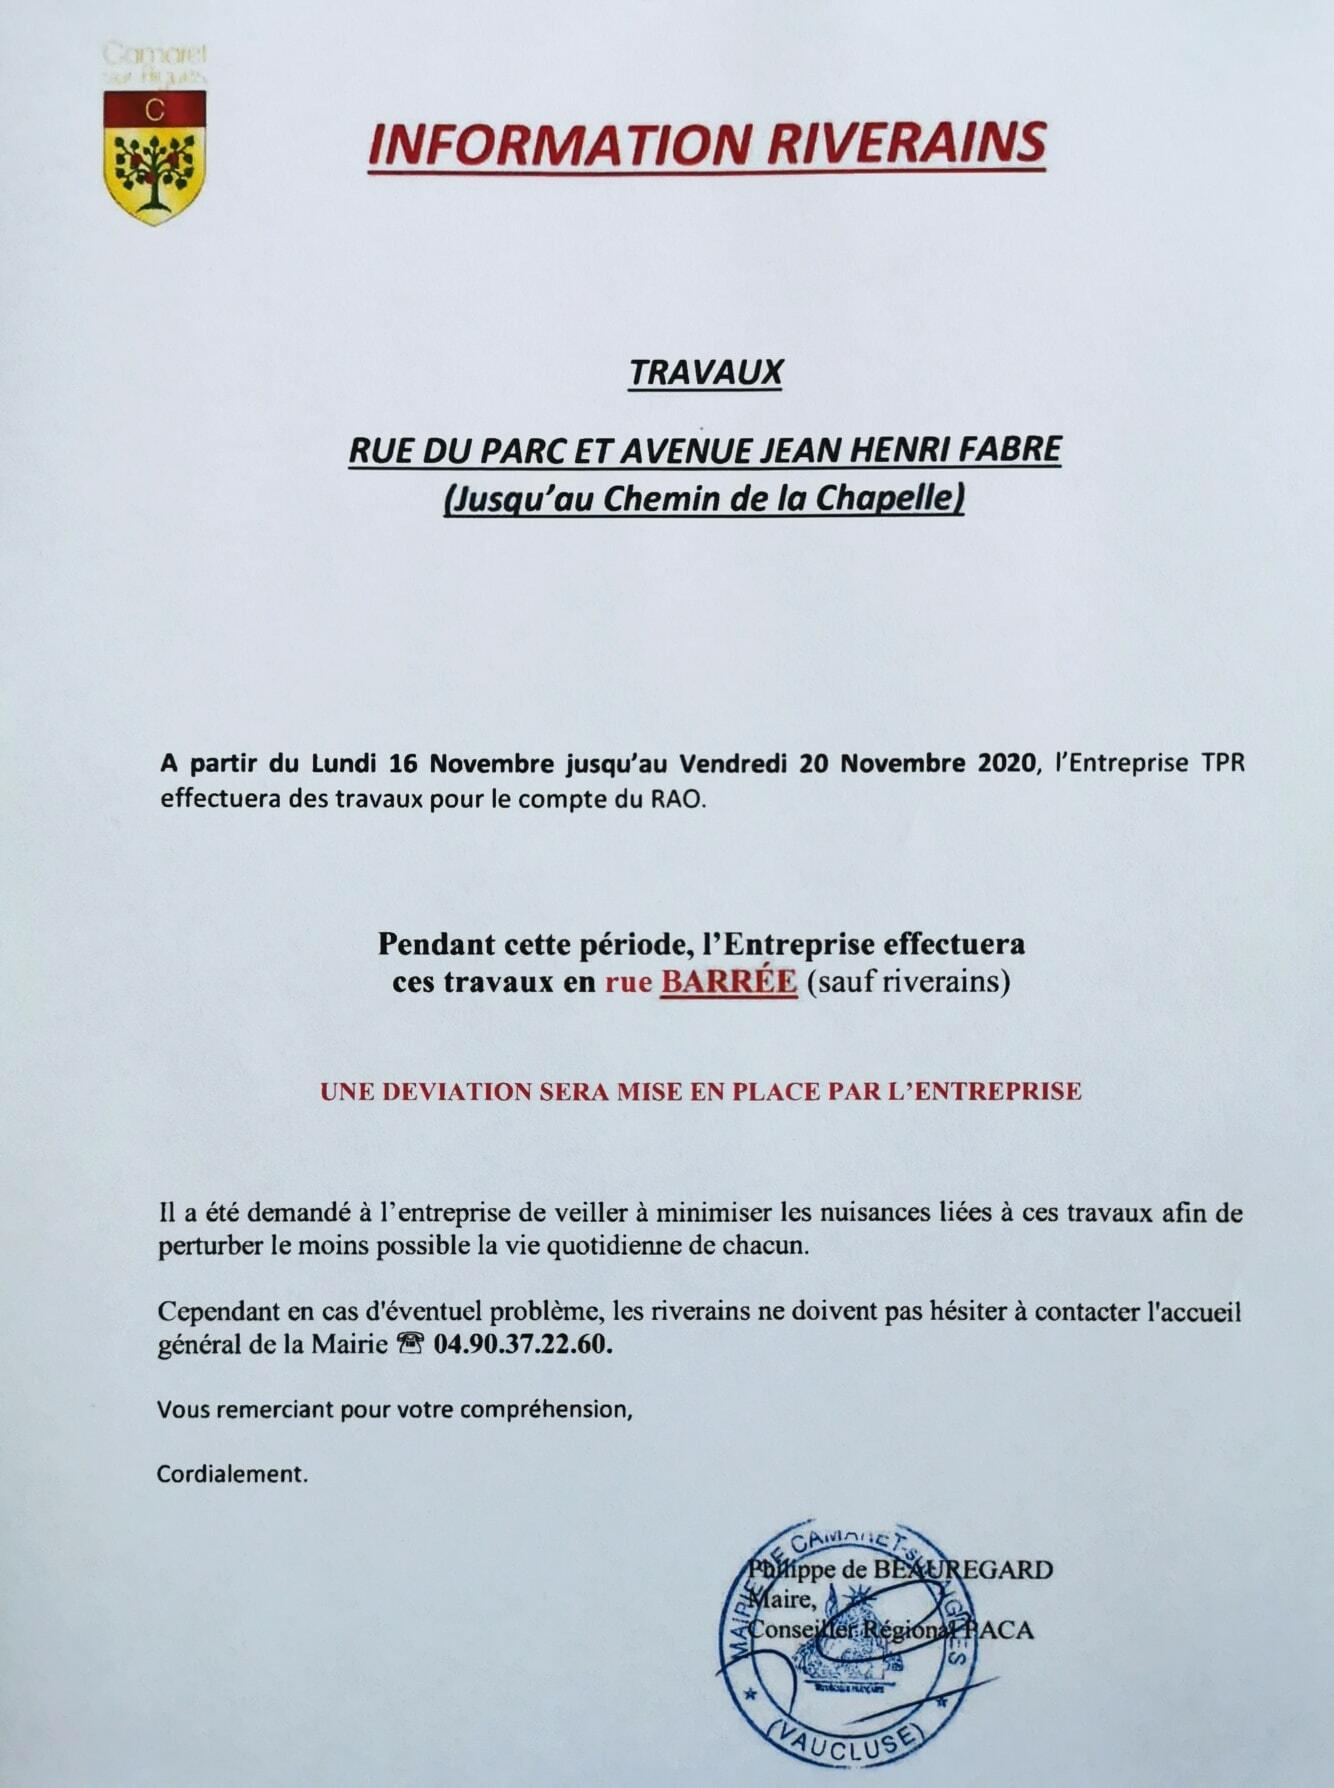 Information riverains : travaux rue du Parc et avenue Jean-Henri Fabre du 16 au 20 novembre 2020